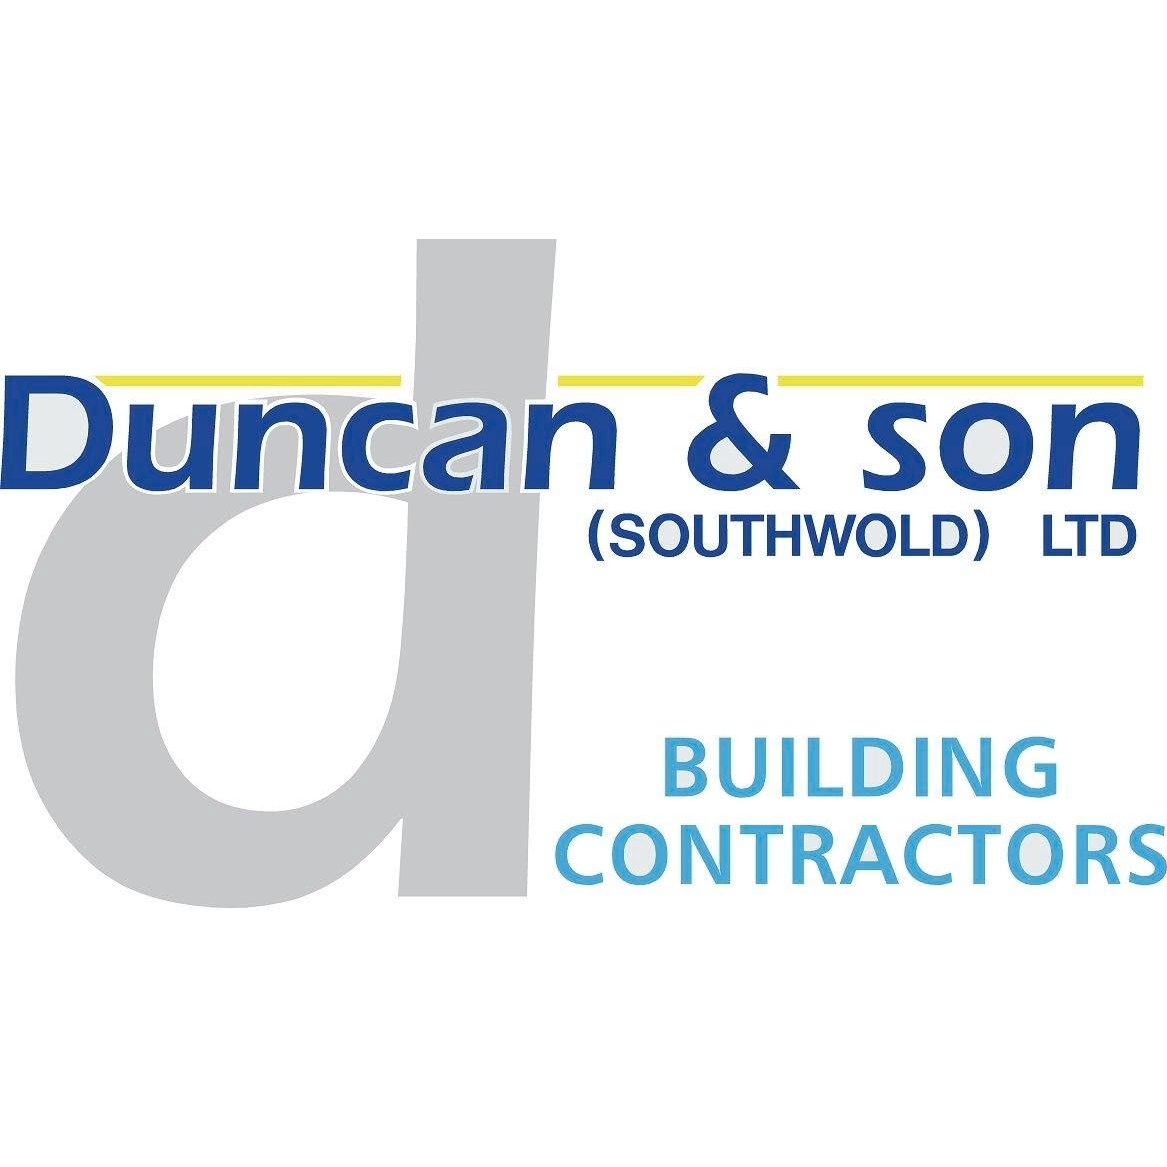 Duncan & Son Building Contractors - Southwold, Essex IP18 6SZ - 01502 723636 | ShowMeLocal.com